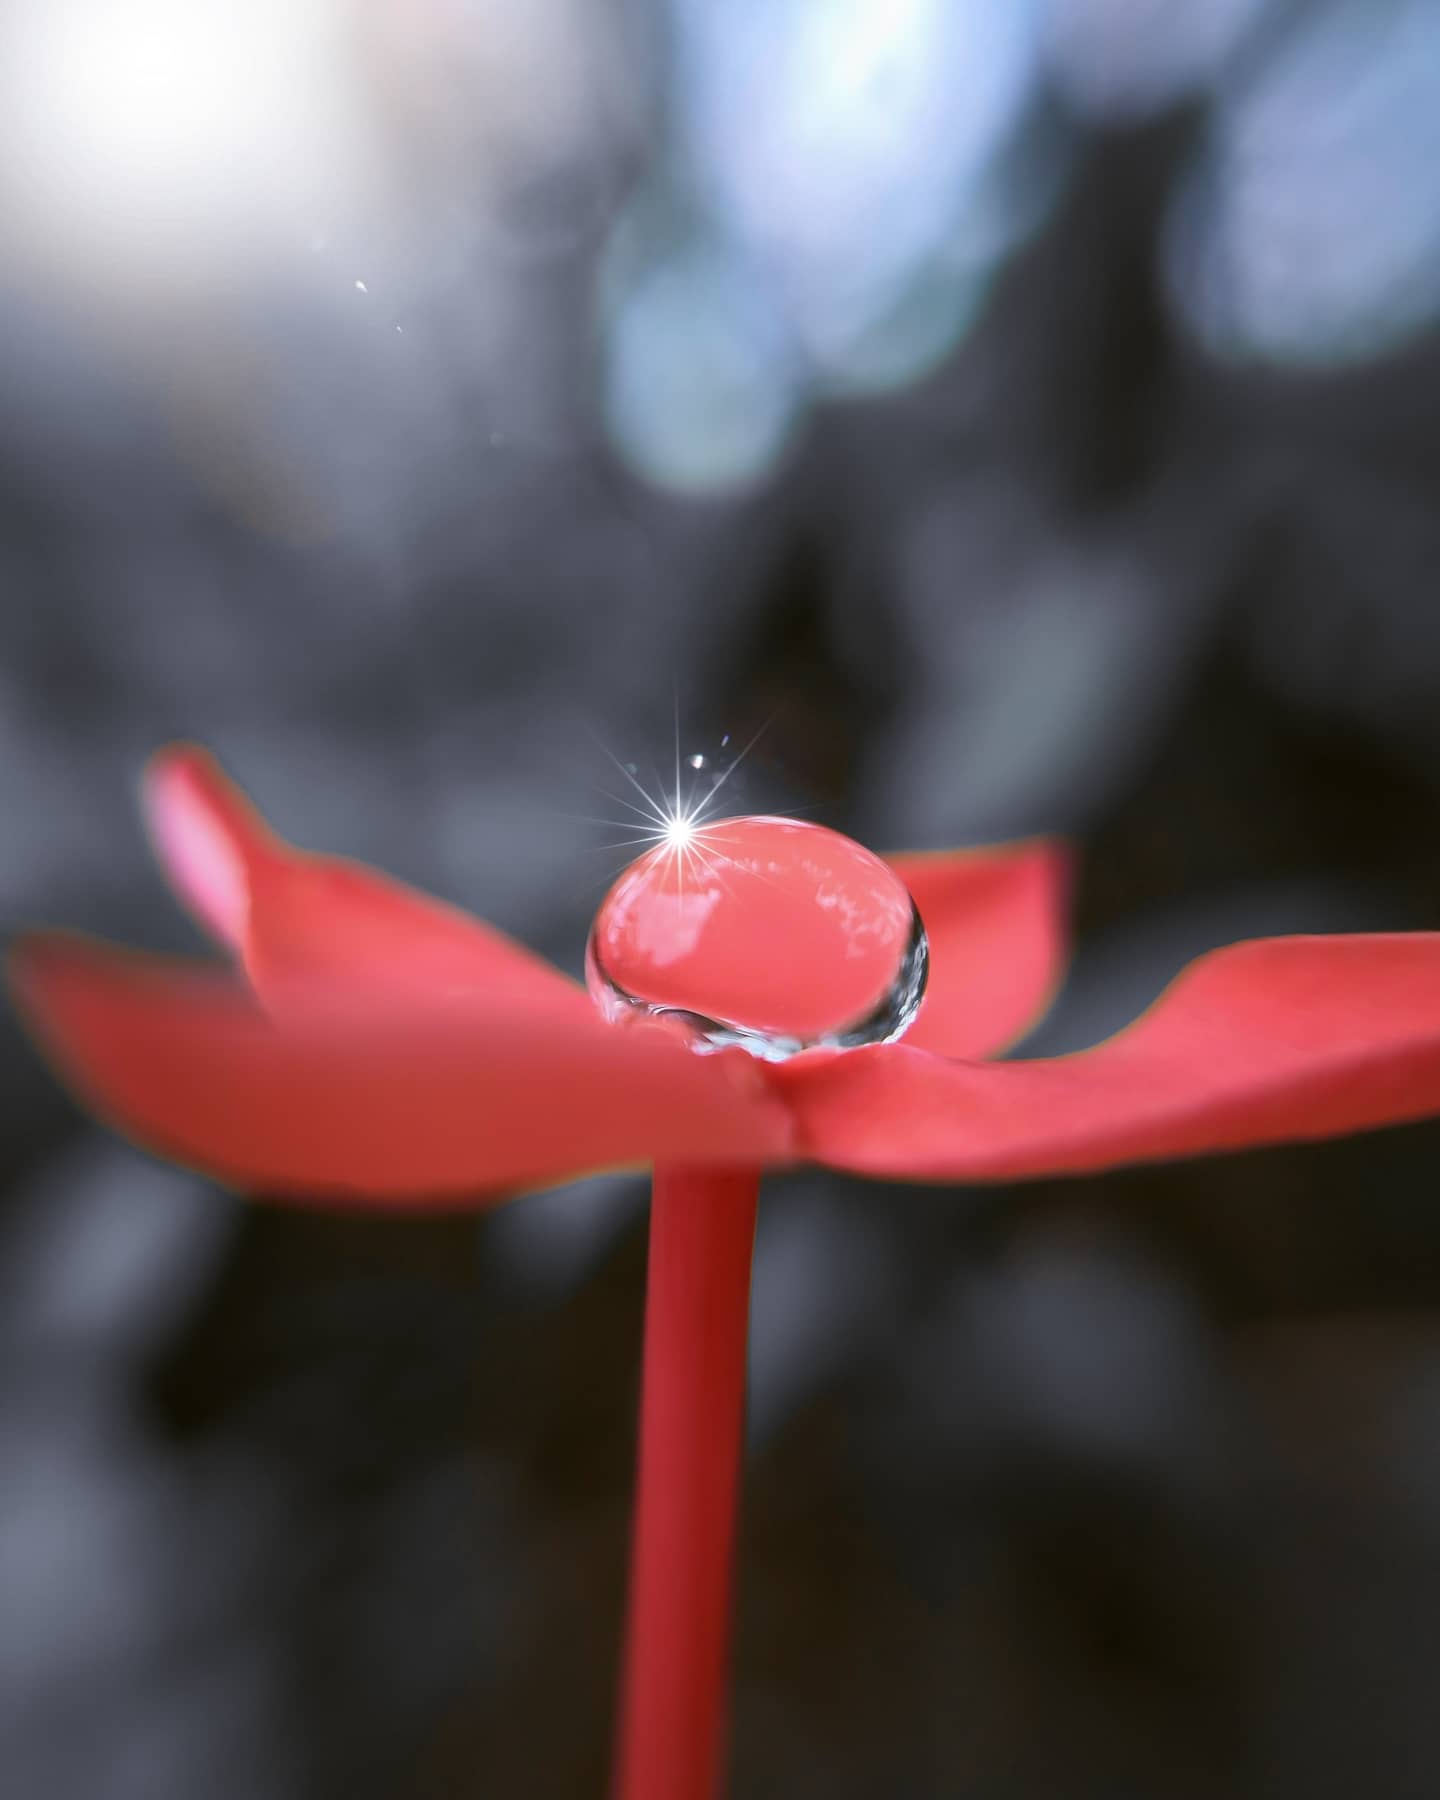 Dewdrop shining on a flower